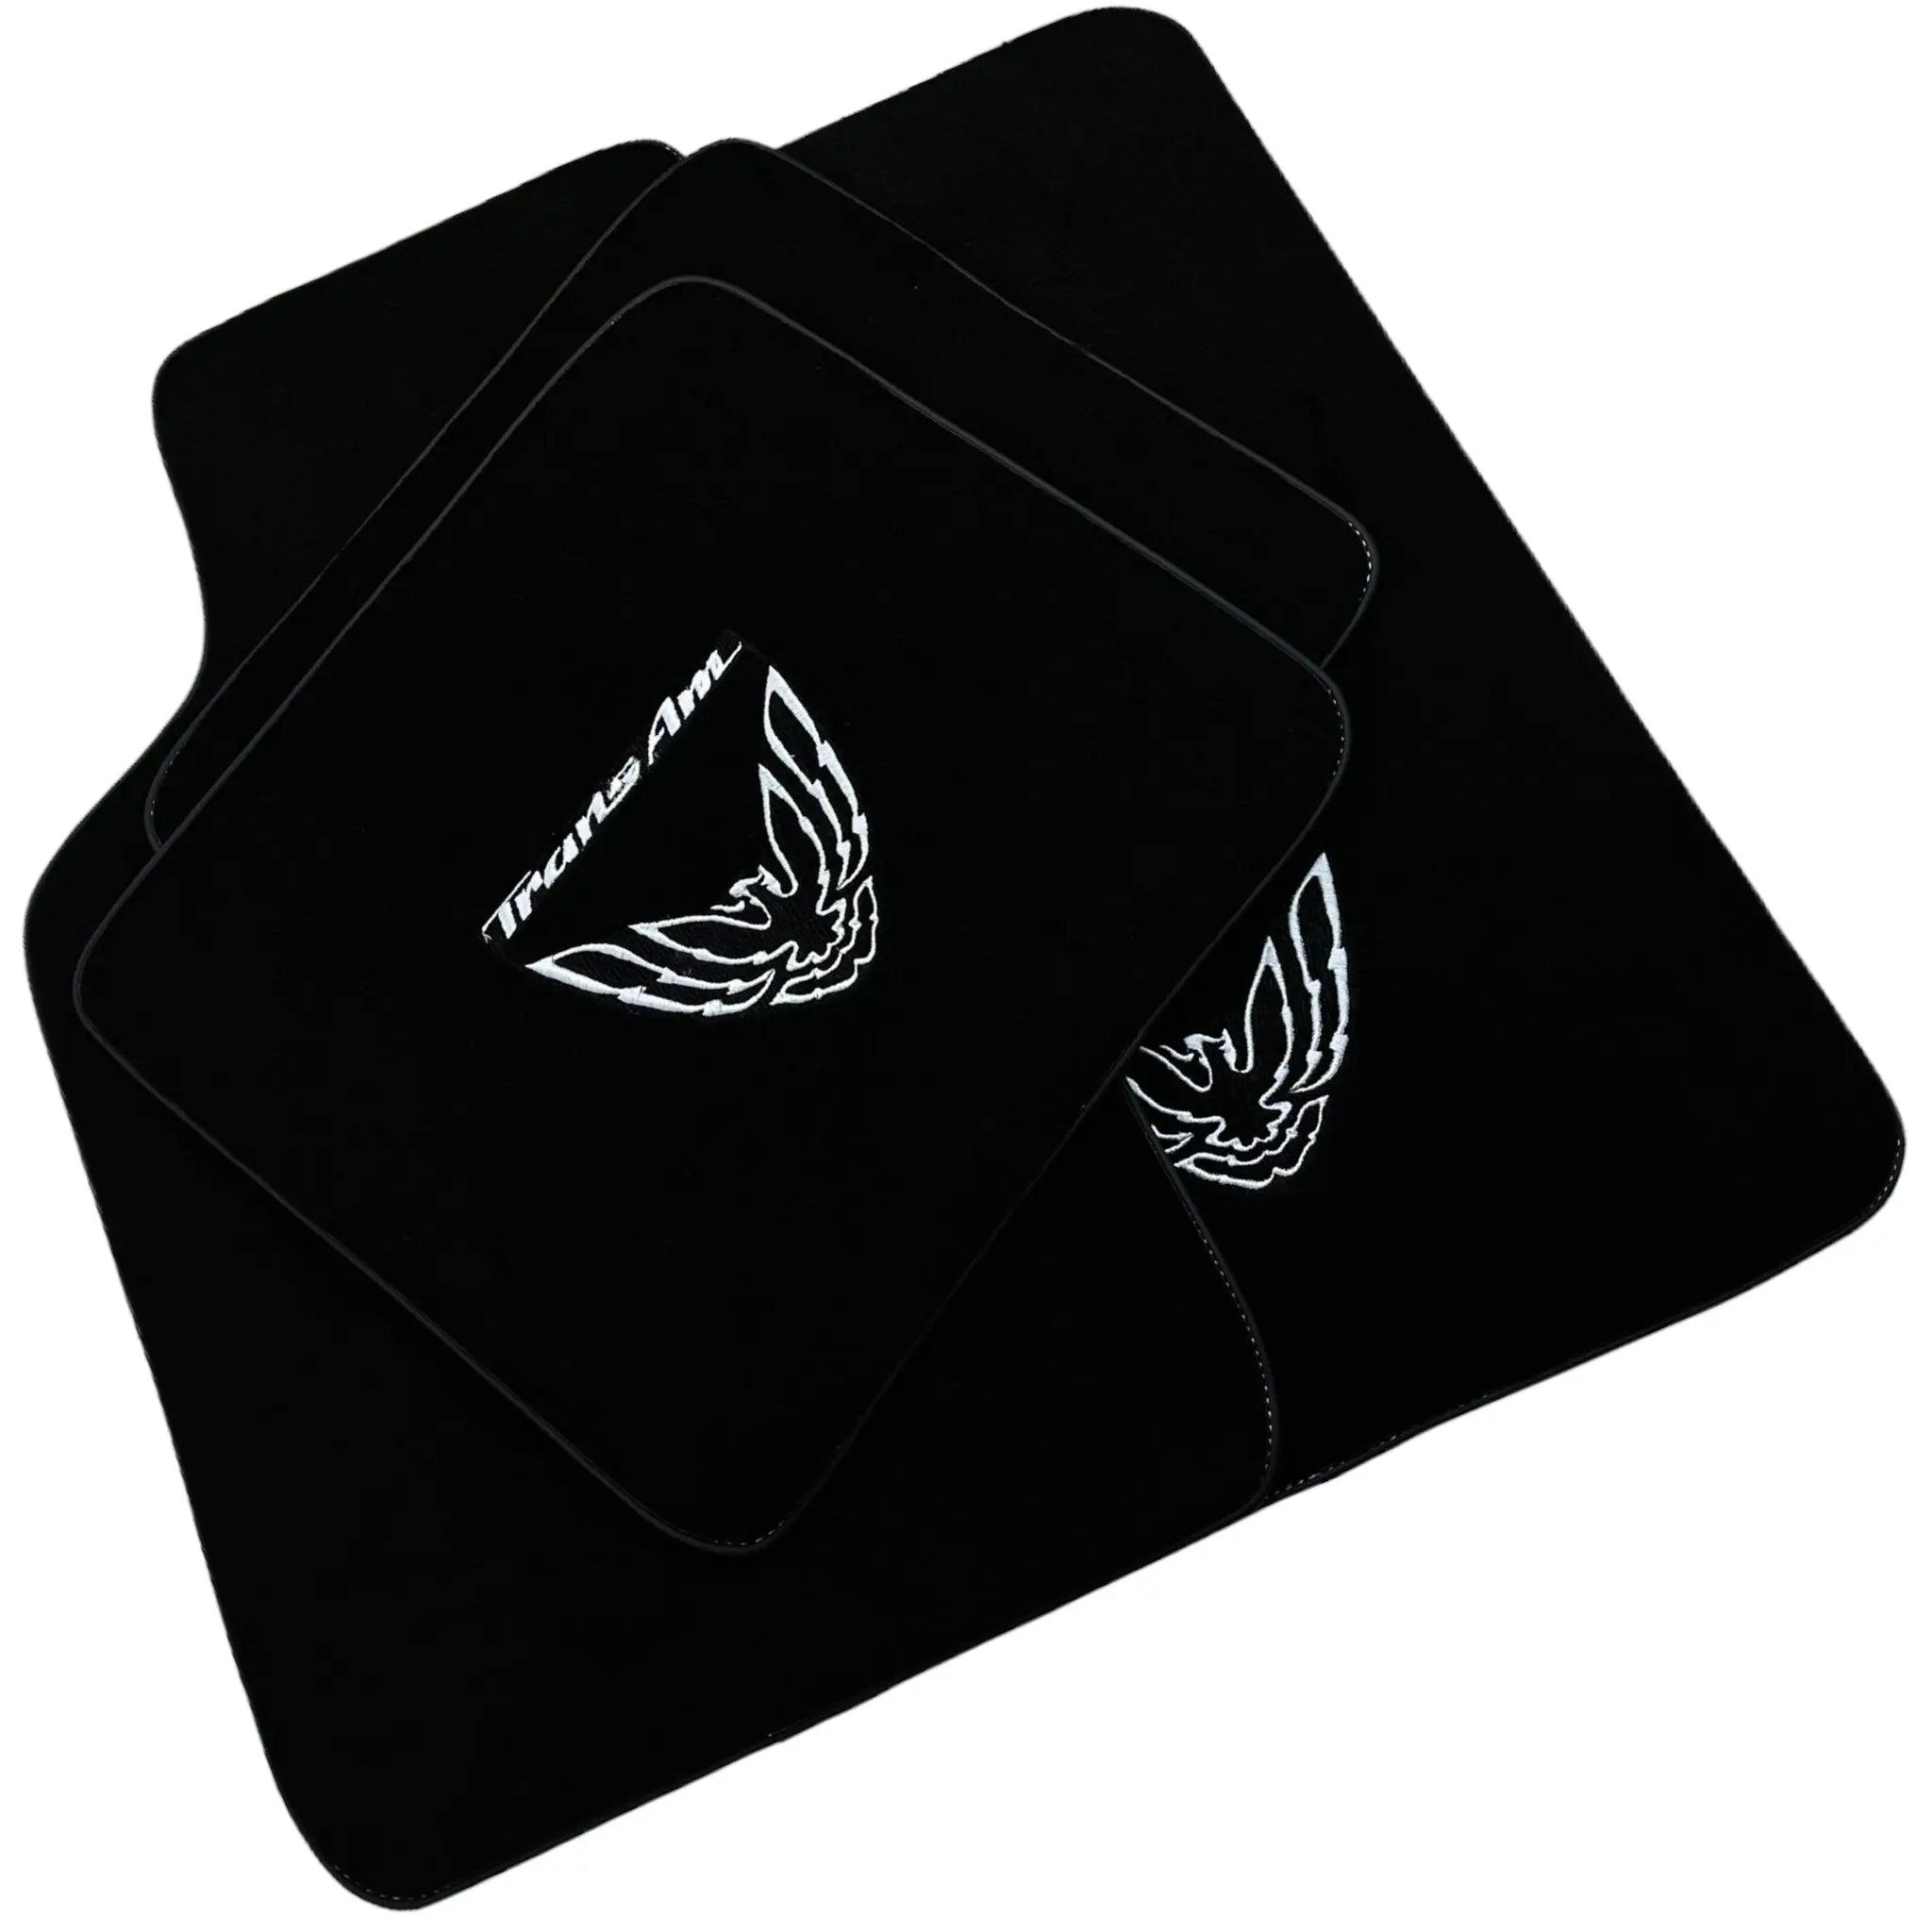 Black Floor Mats for Pontiac FireBird (1970-1981) with TransAm Logo